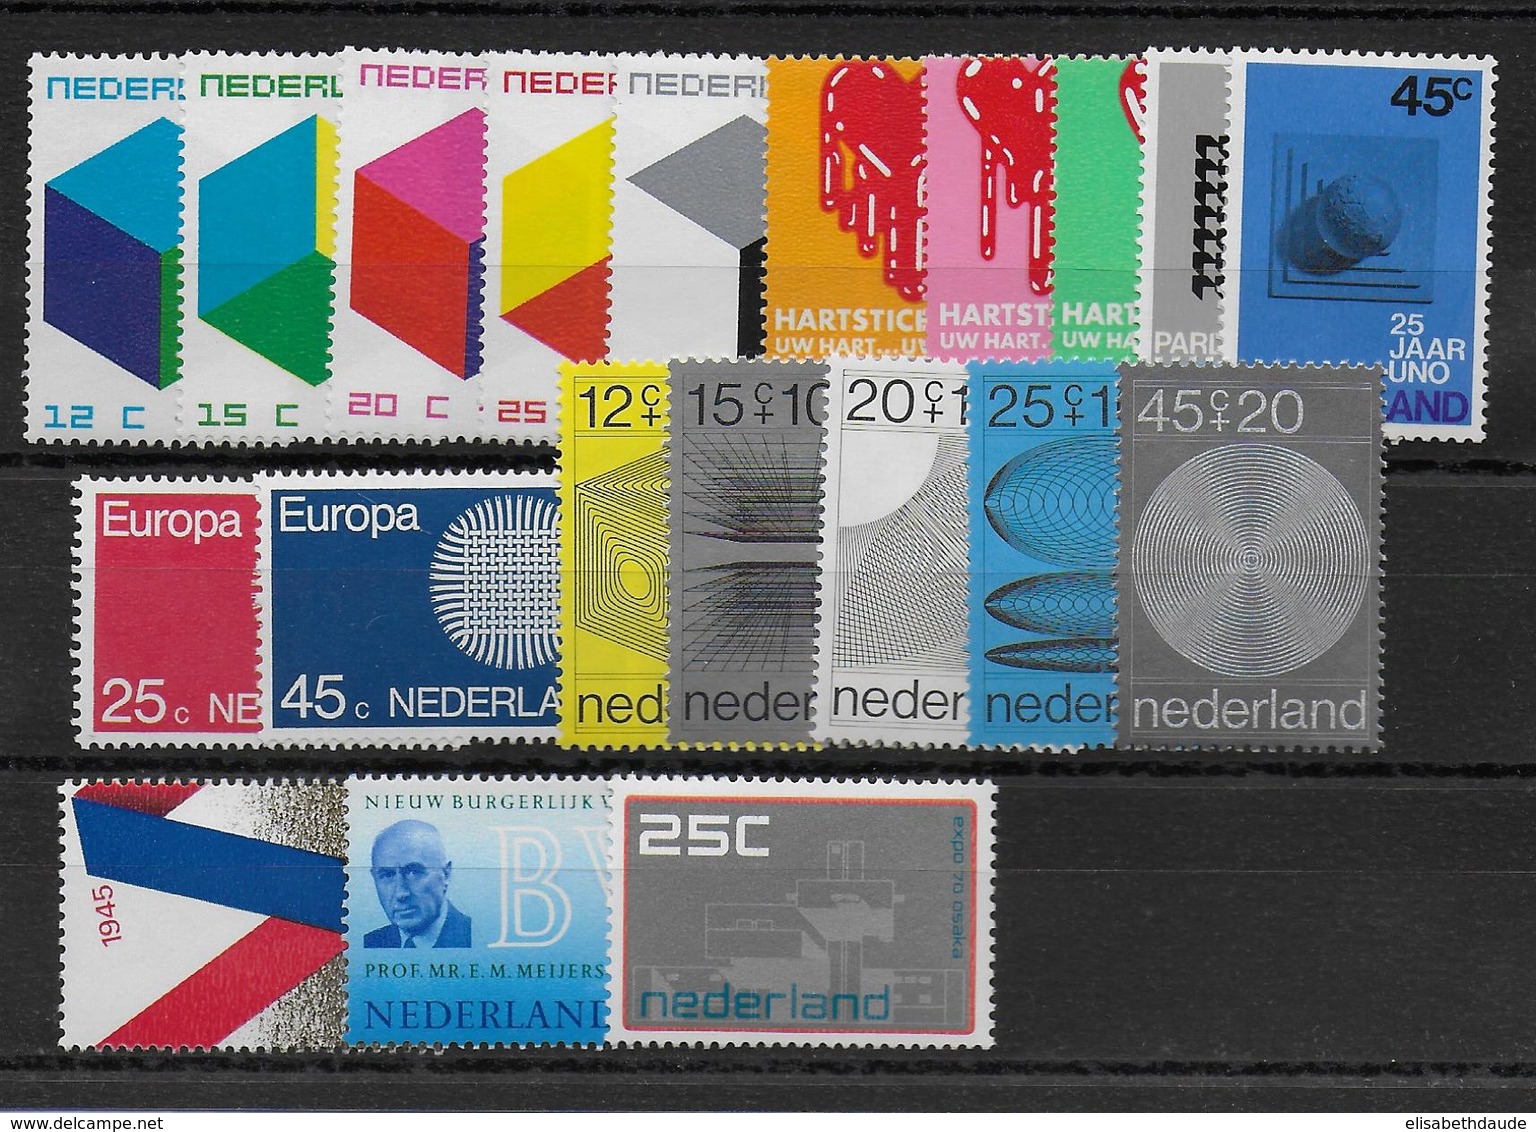 NEDERLAND - ANNEE COMPLETE 1970 ** MNH - COTE YVERT = 25 EUR. - 20 VALEURS - Full Years